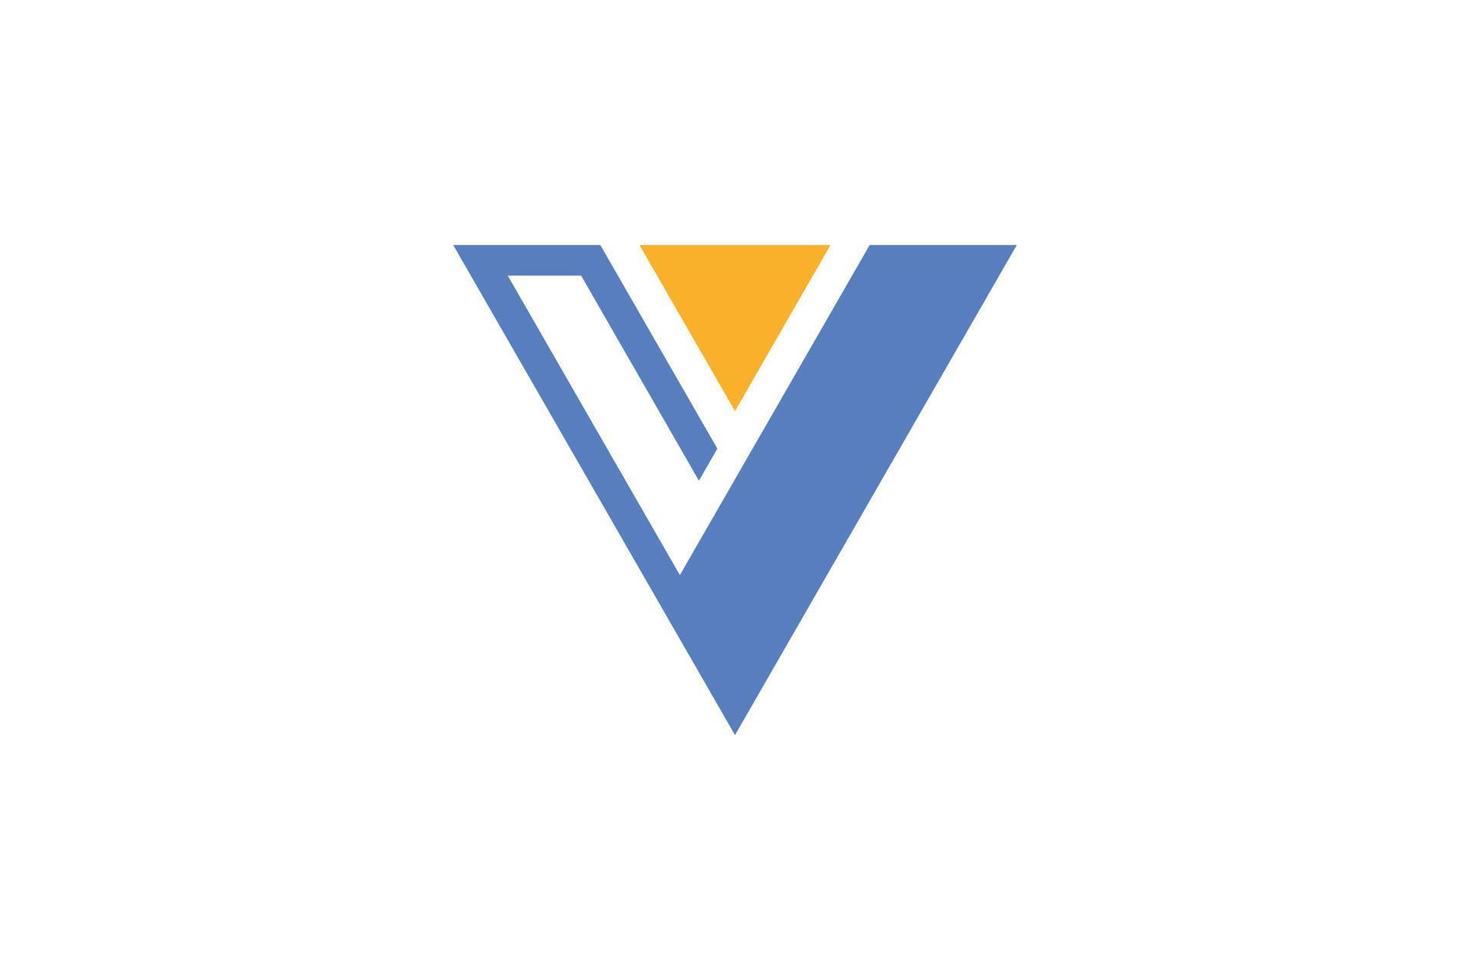 Creative Letter V Logo vector